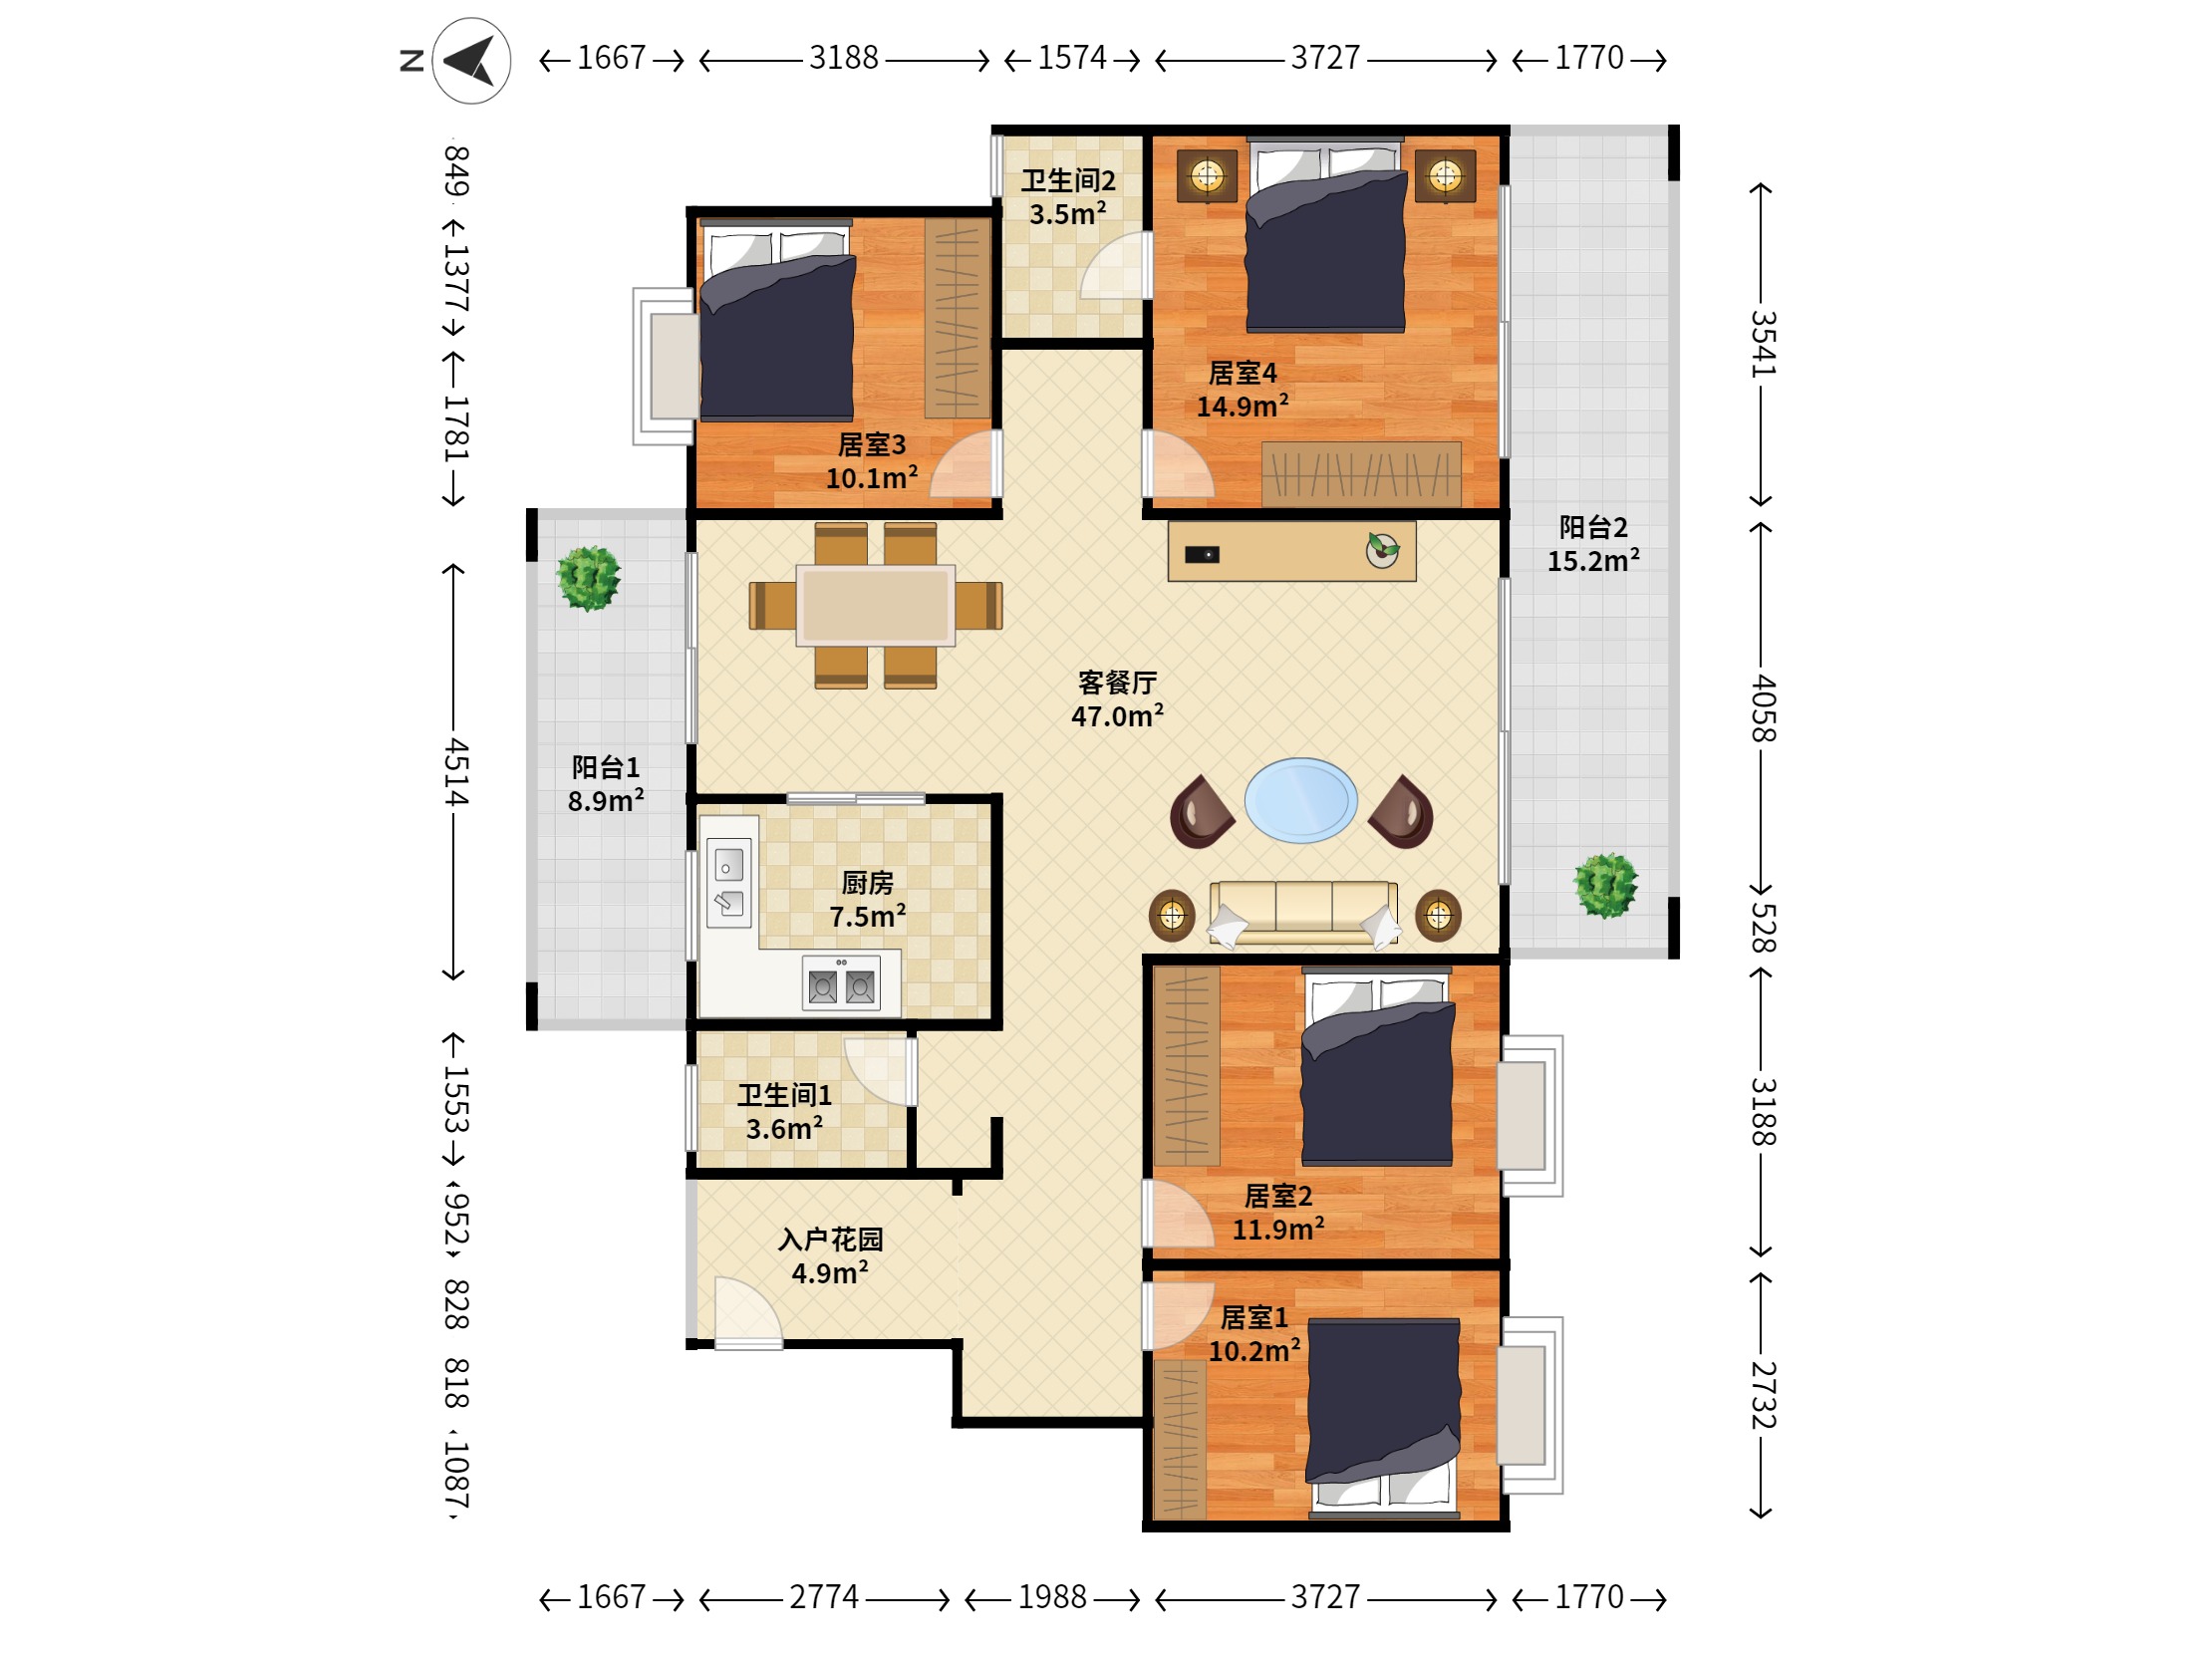 熊猫国际 南北 普装 4室 2厅 155m²-中山熊猫国际租房